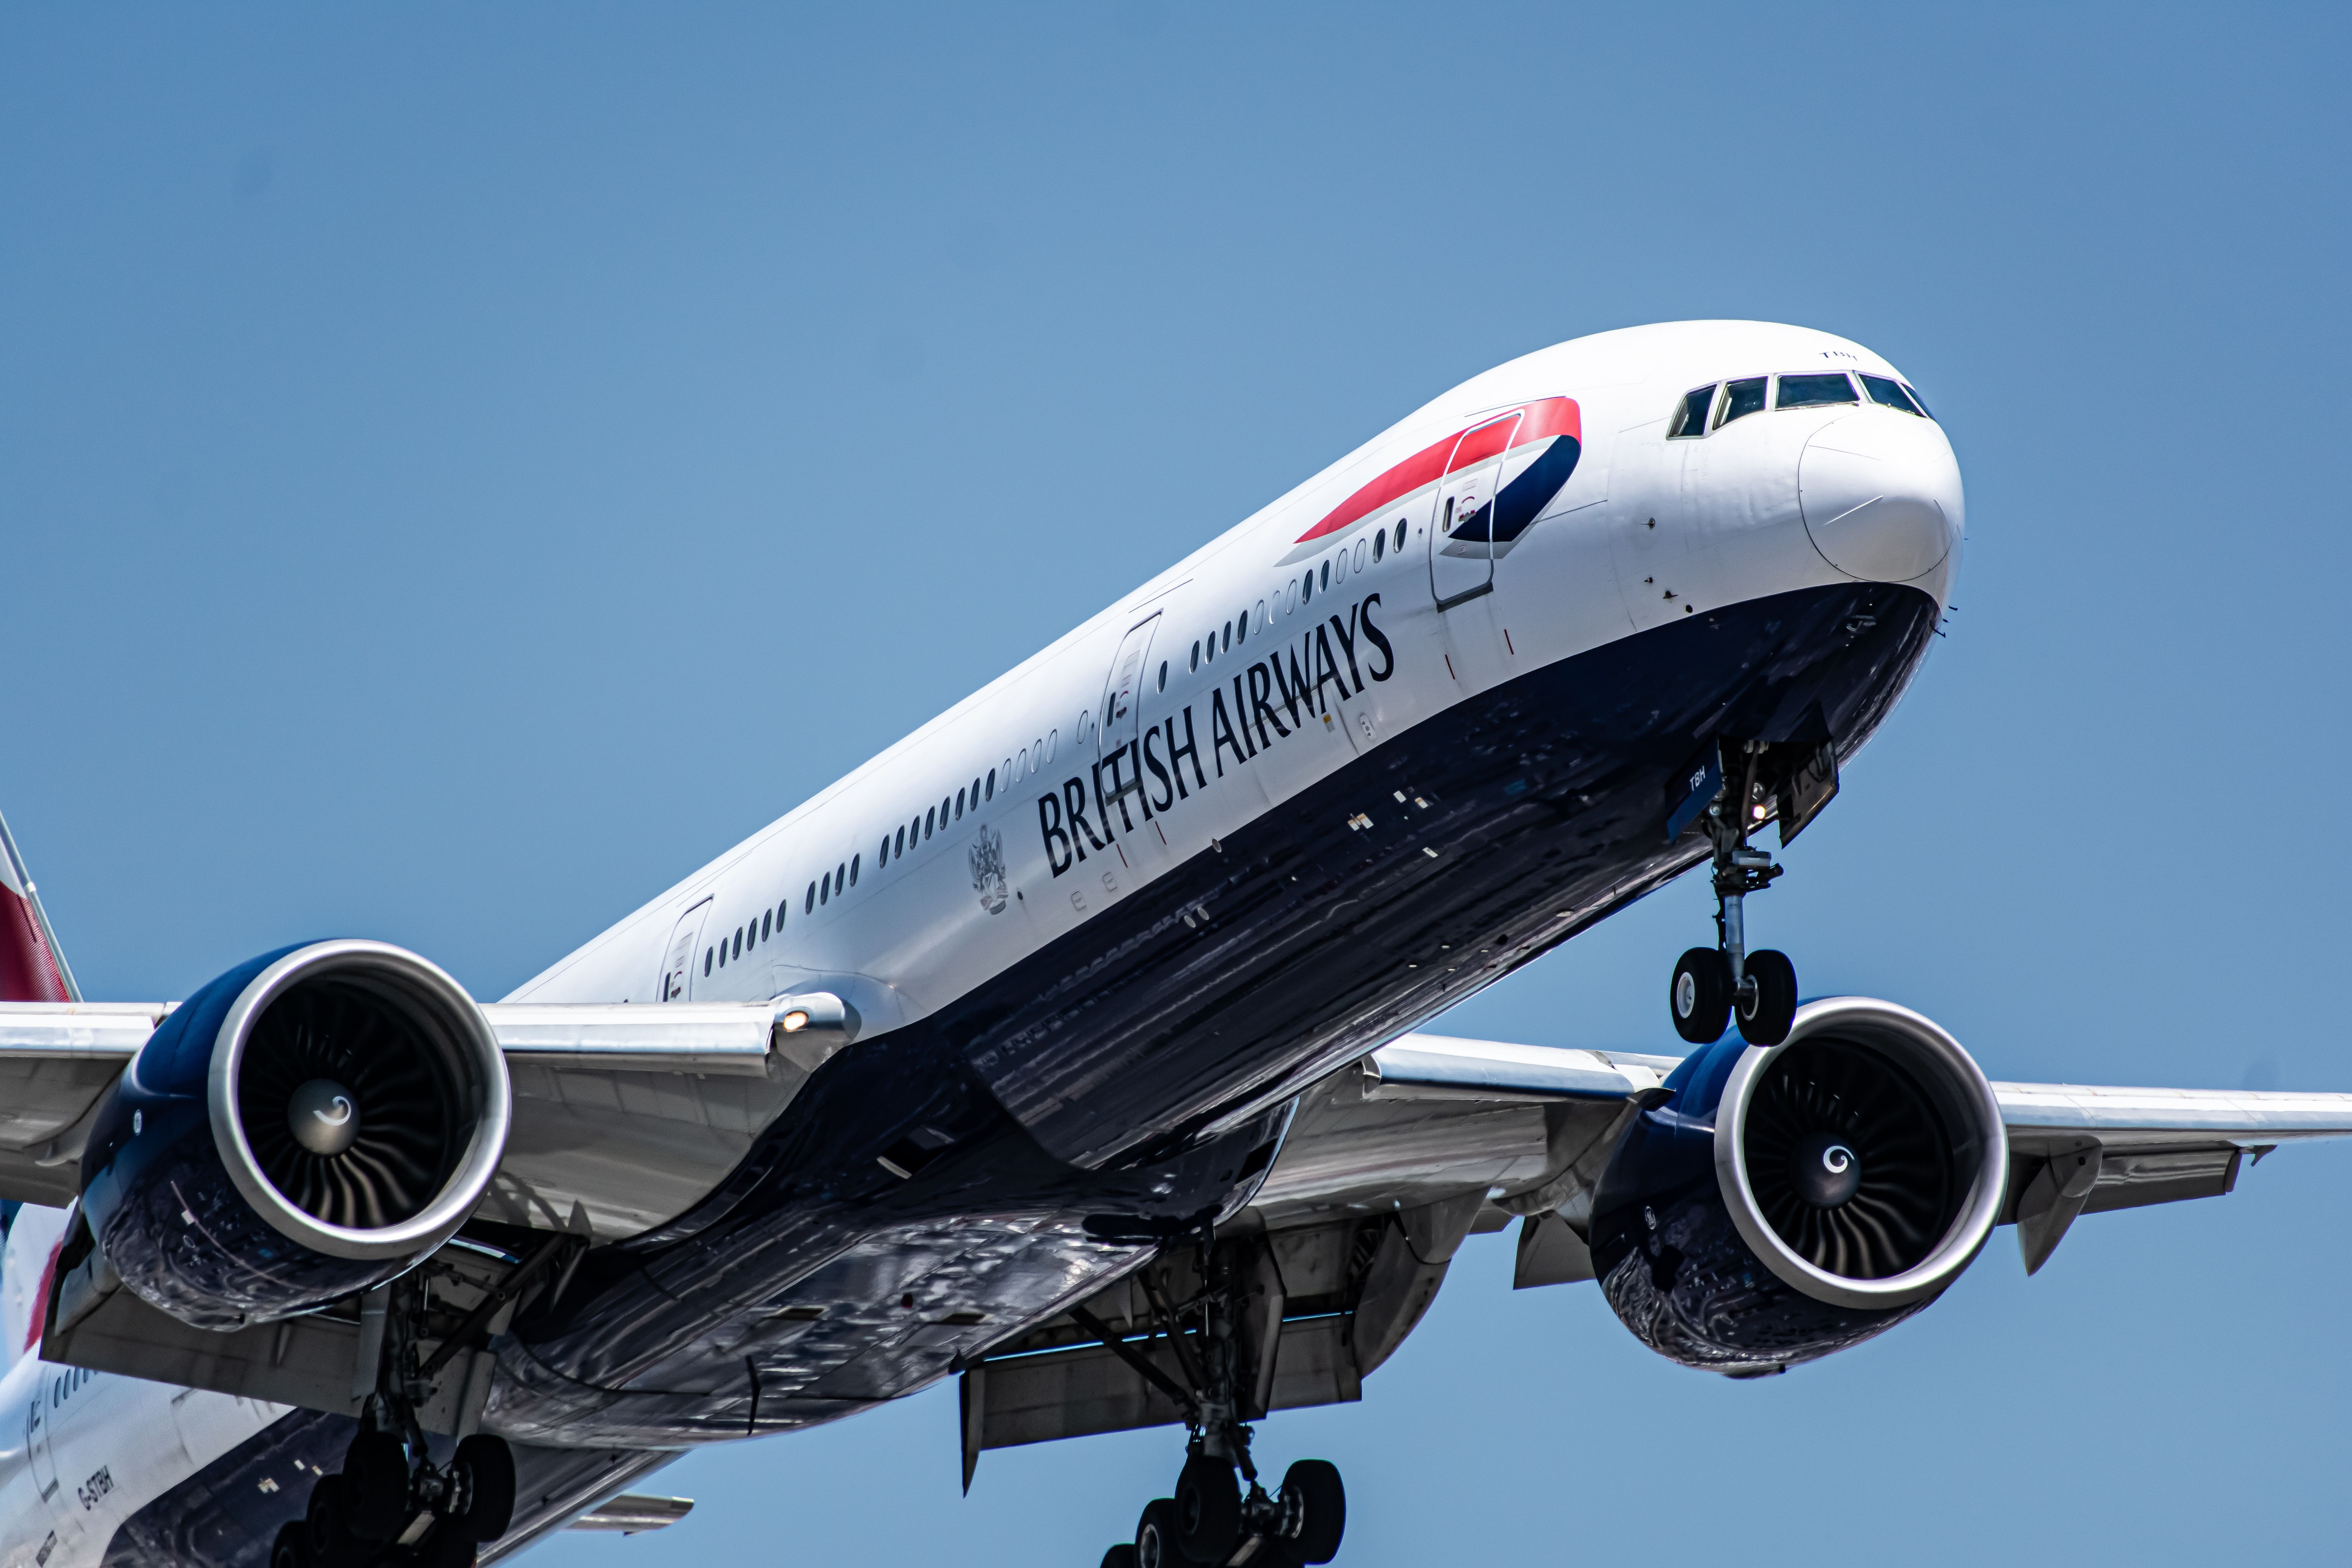 British Airways Boeing 777 landing at LAX